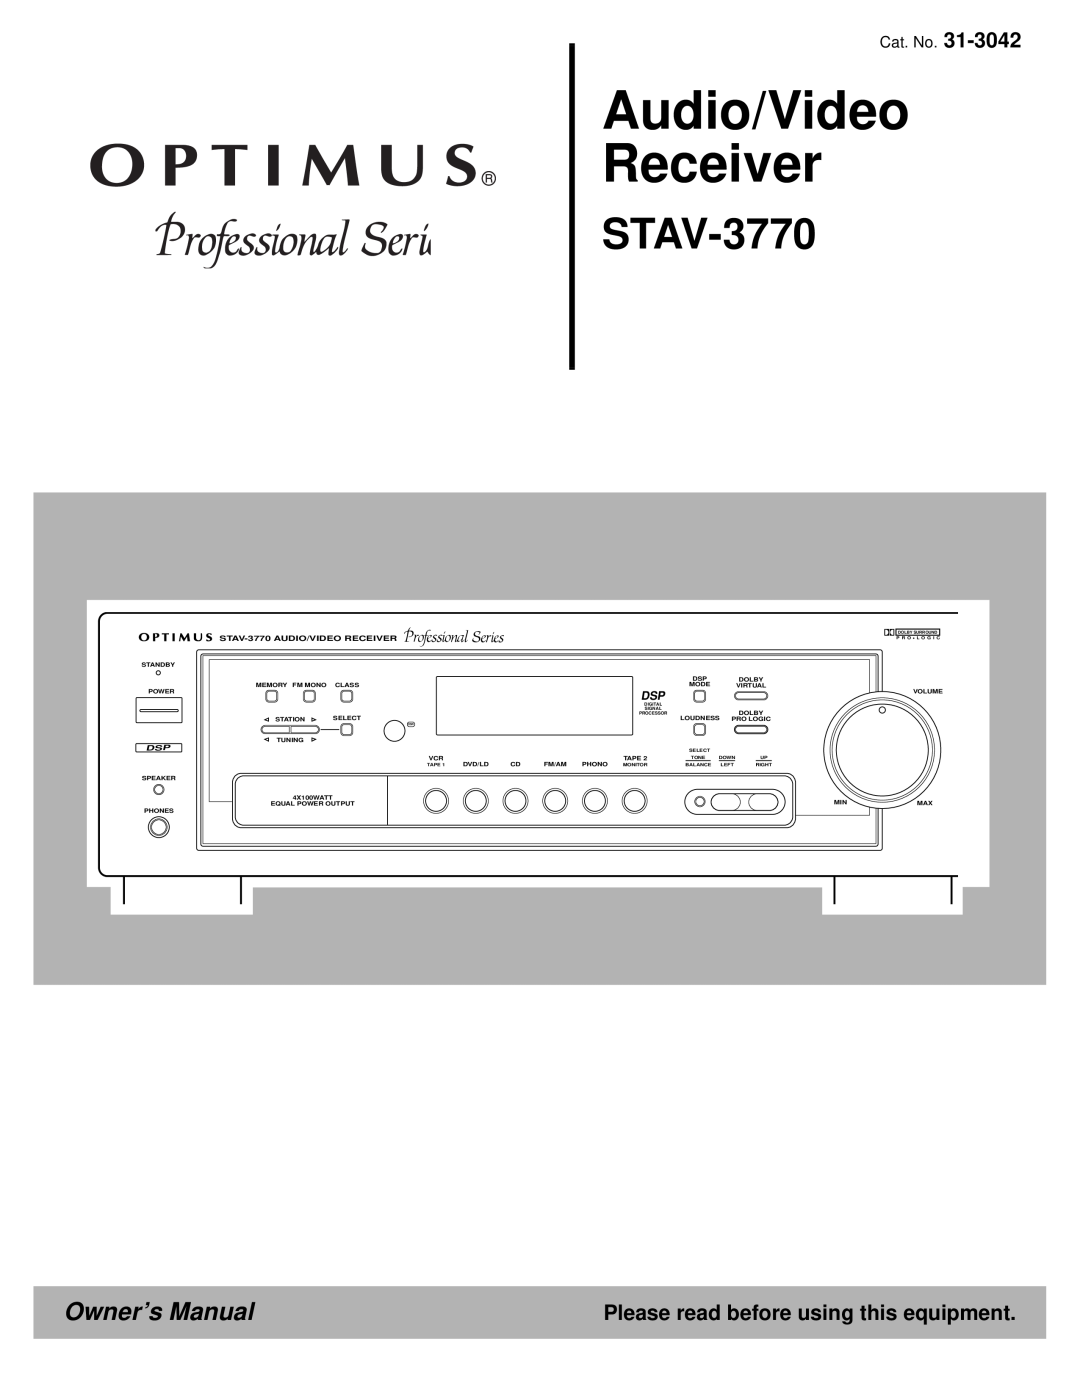 Optimus 31-3042 Audio/Video Receiver, Please read before using this equipment, STAV-3770AUDIO/VIDEO RECEIVER 